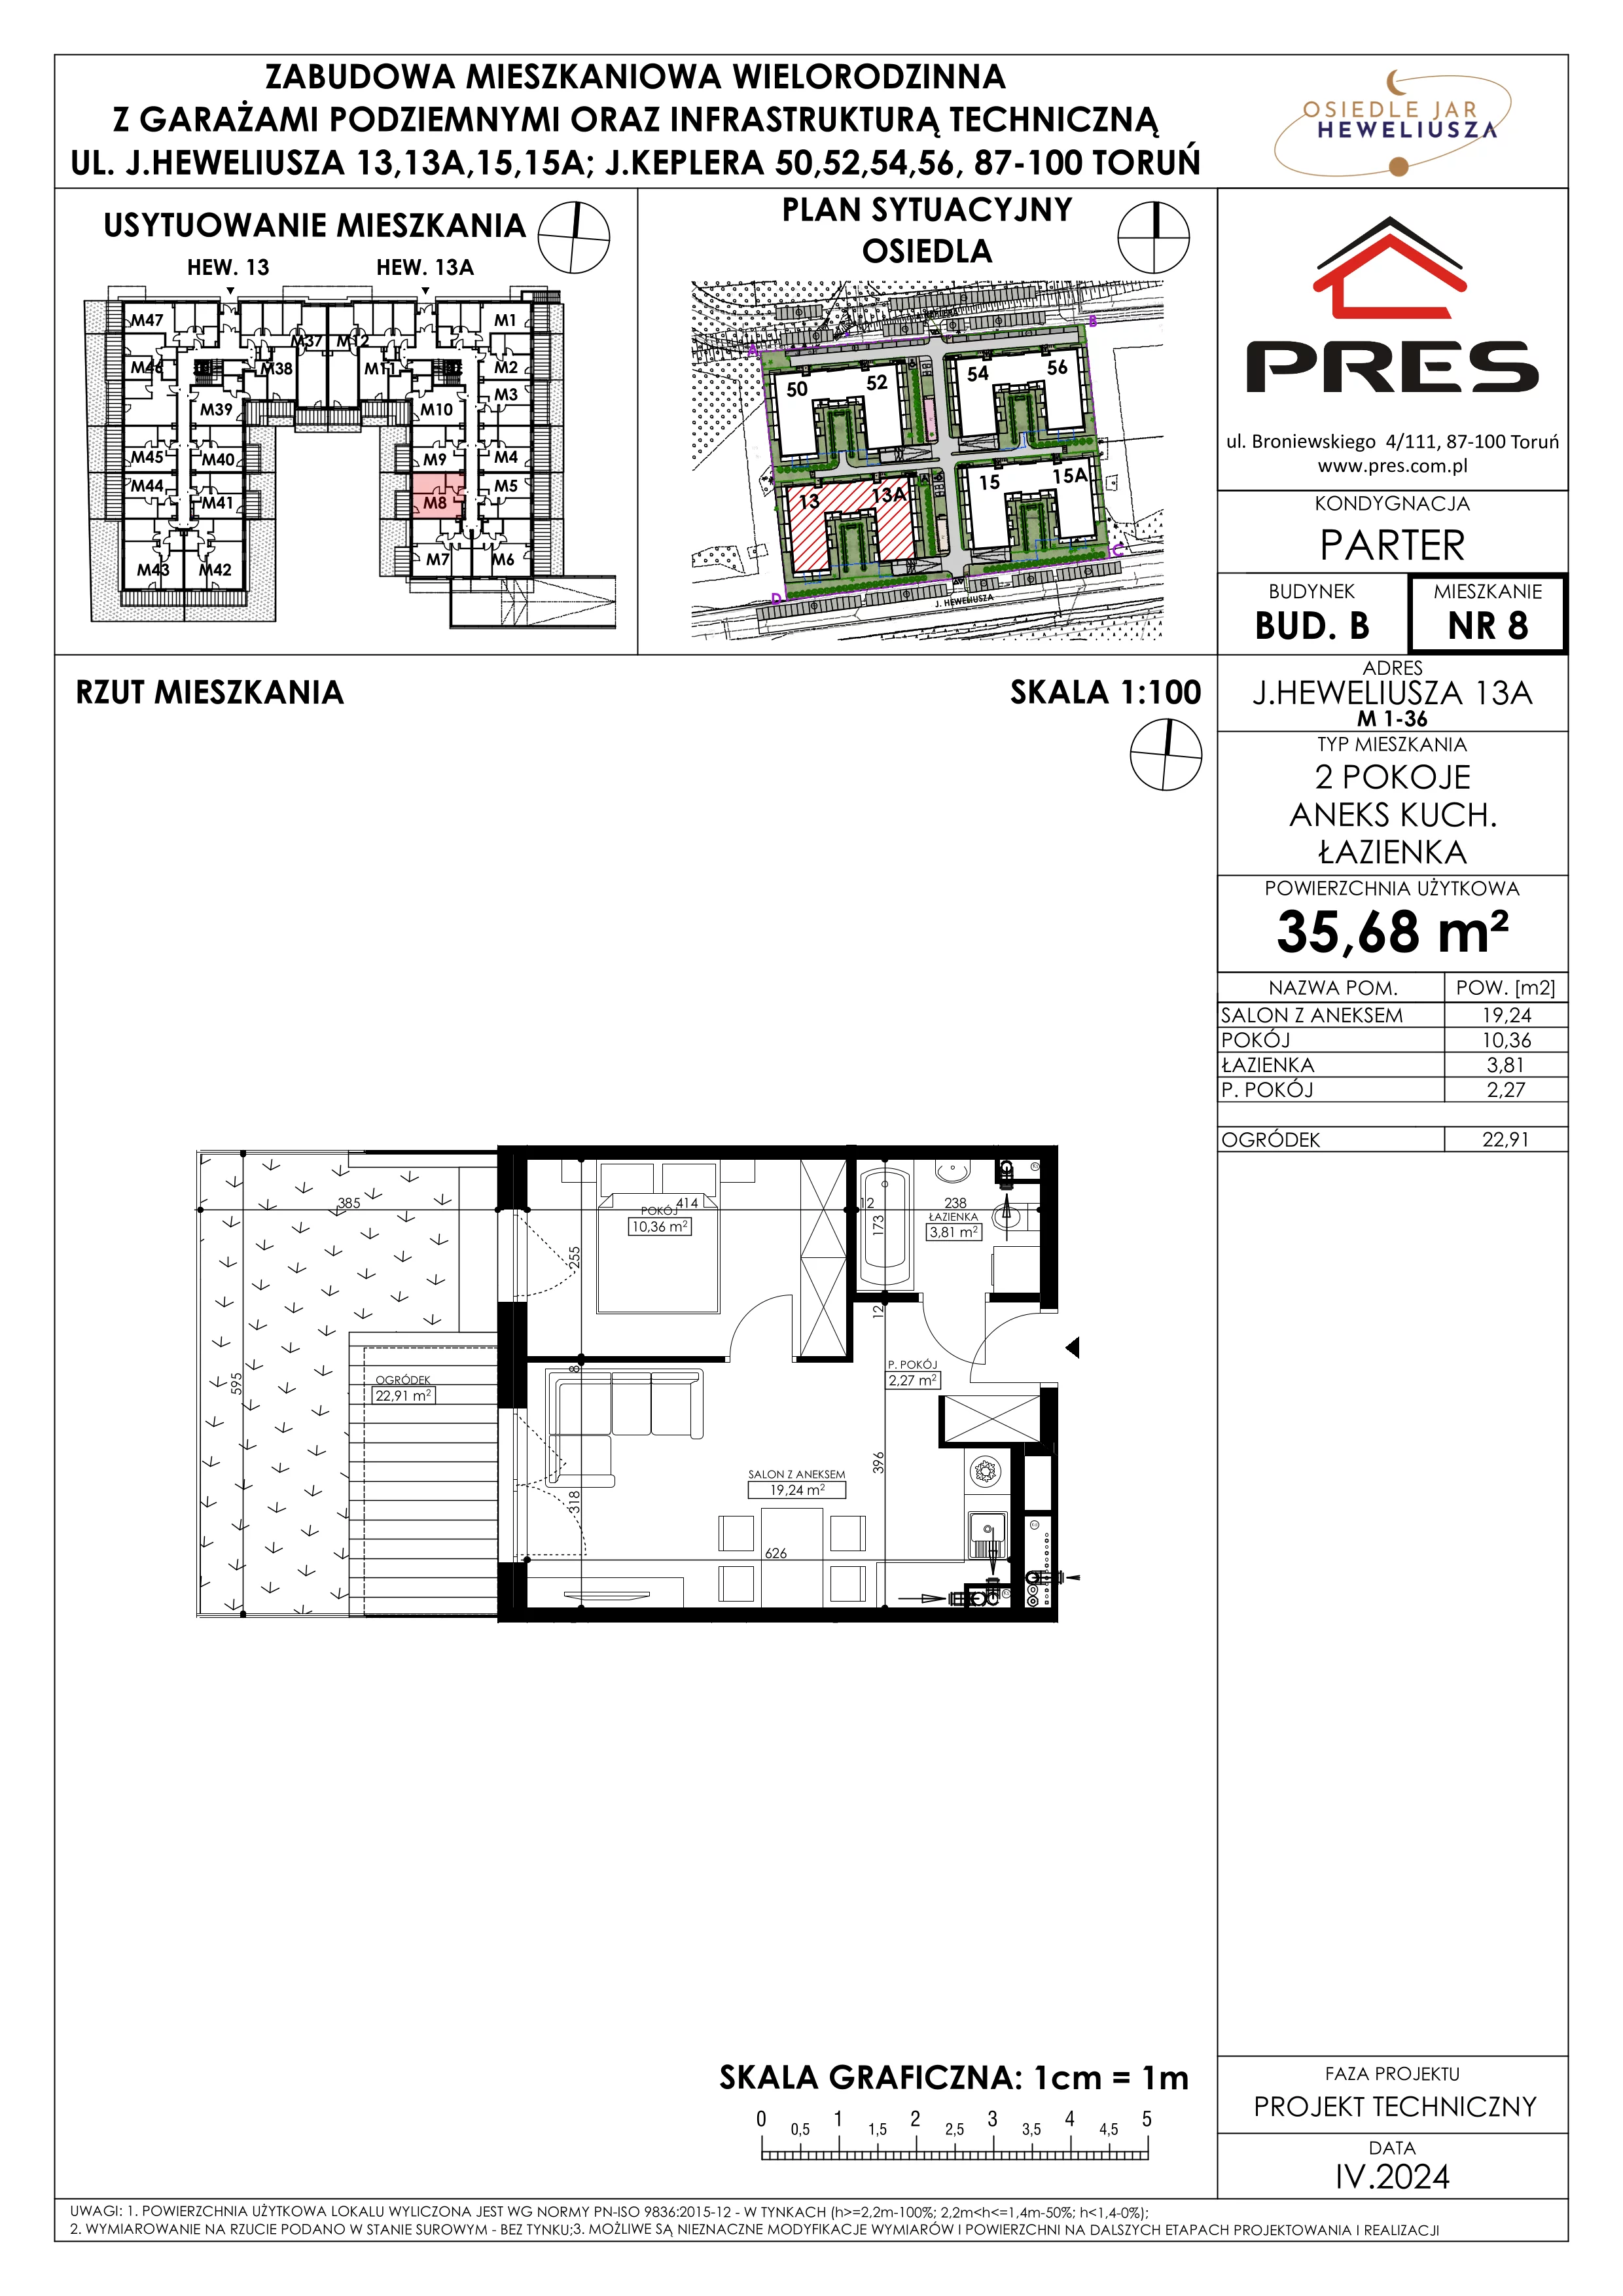 Mieszkanie 35,68 m², parter, oferta nr 8, Osiedle JAR Heweliusza - Etap II, Toruń, Wrzosy, JAR, ul. Heweliusza 13-15A